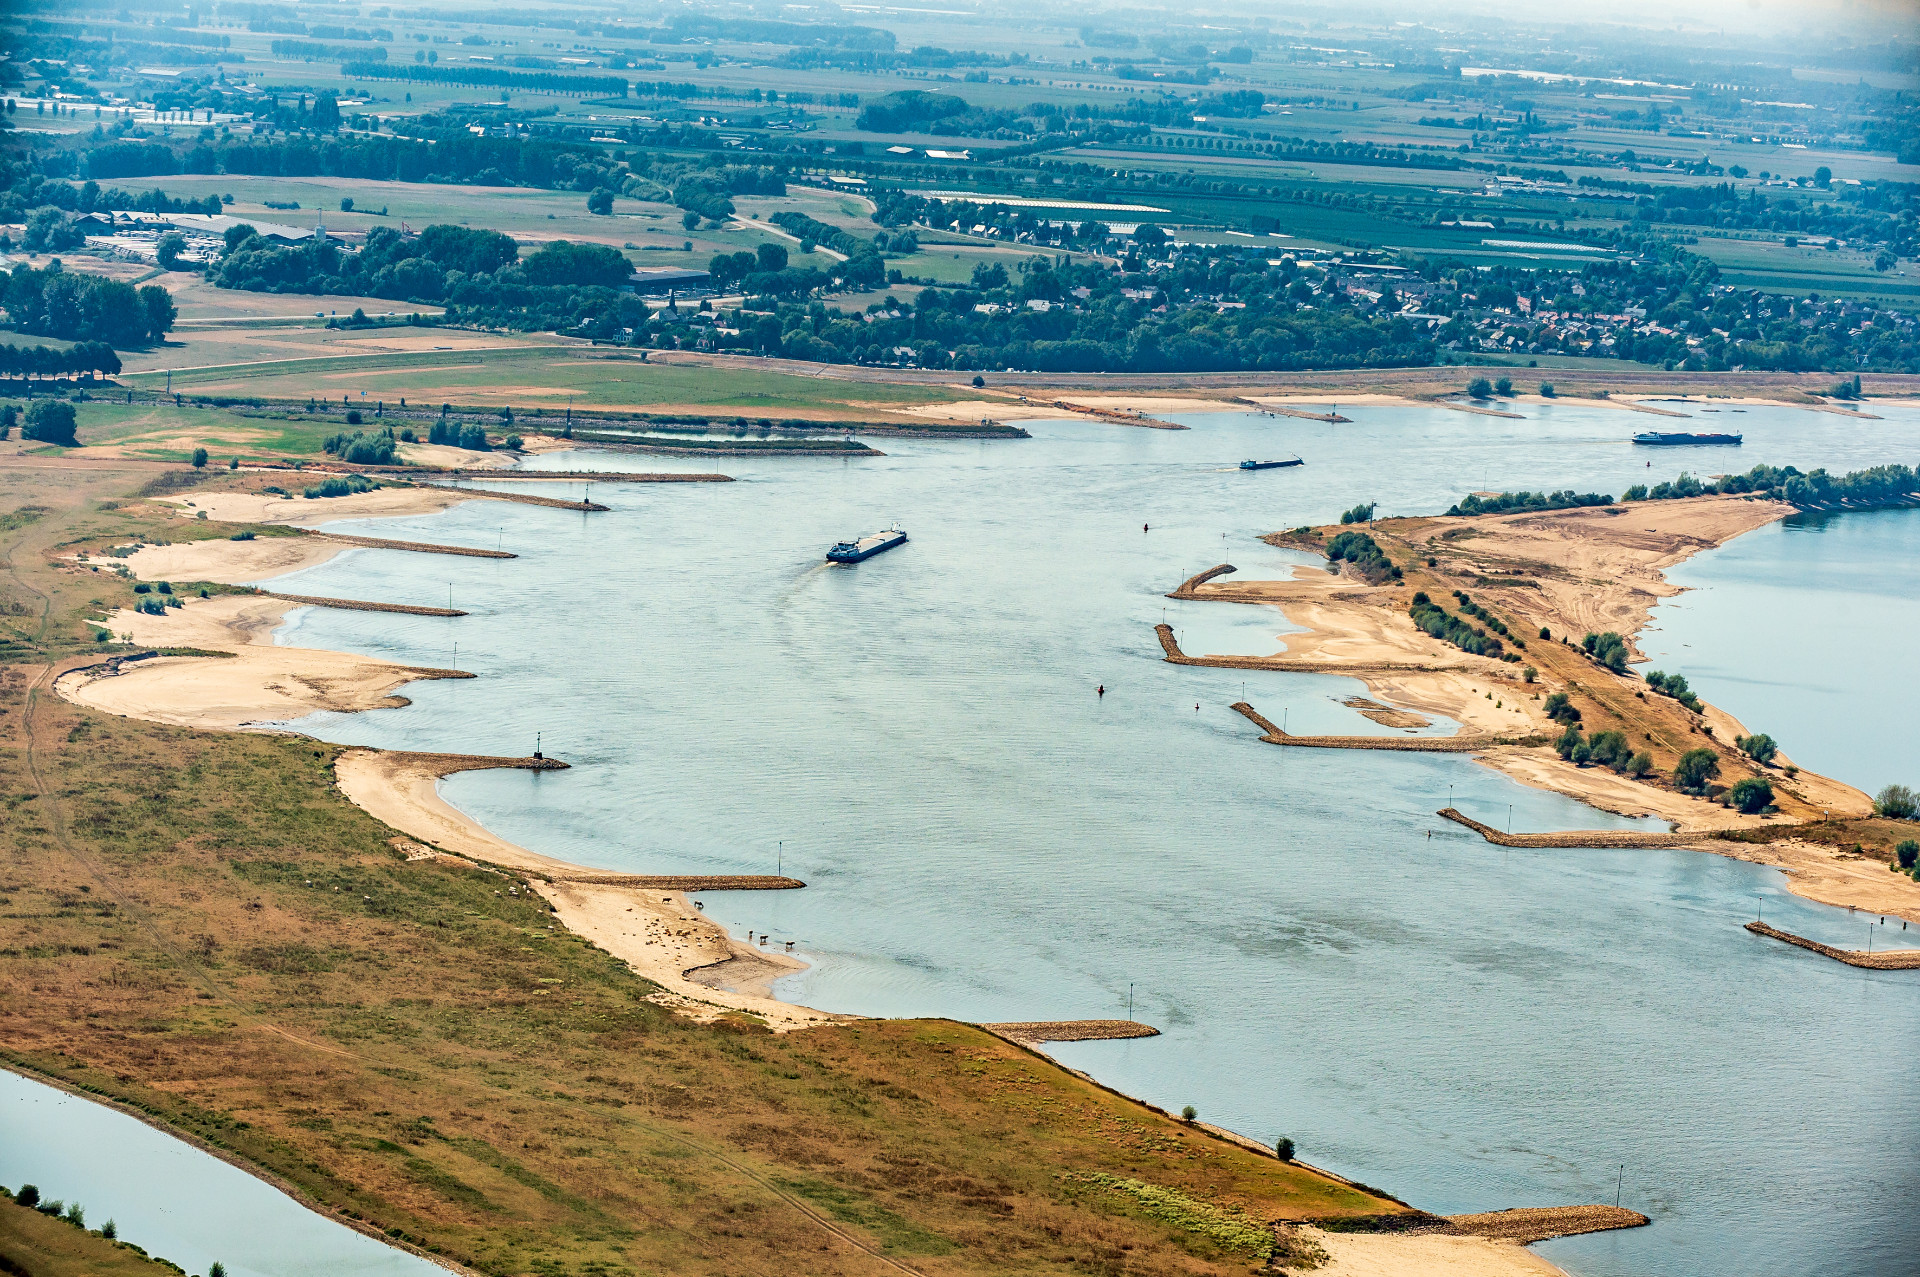 Laagwater in Nederland, augustus 2018. Scheepvaart is mogelijk, maar kampt met veel beperkingen, zoals de ‘harde laag’ bij Nijmegen. (Archieffoto Rijkswaterstaat)